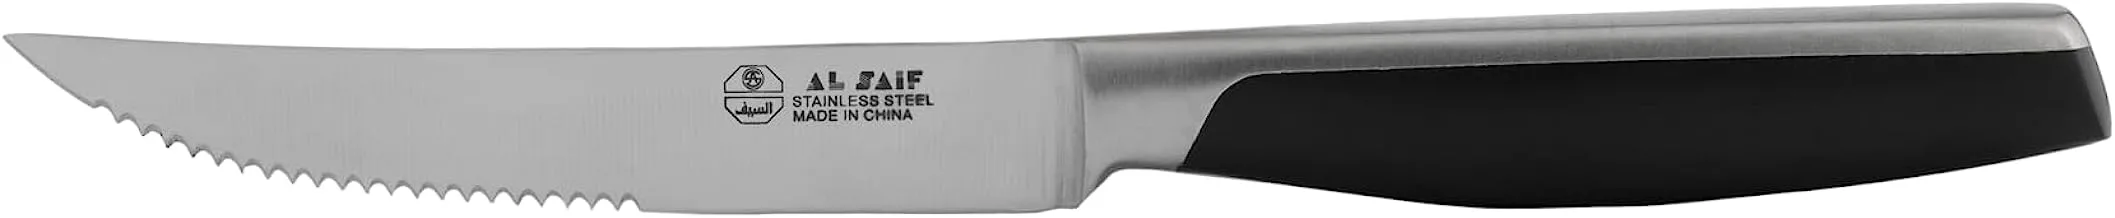 Al Saif Stainless Steel Steak Knife, 4.5-Inch Size, Black